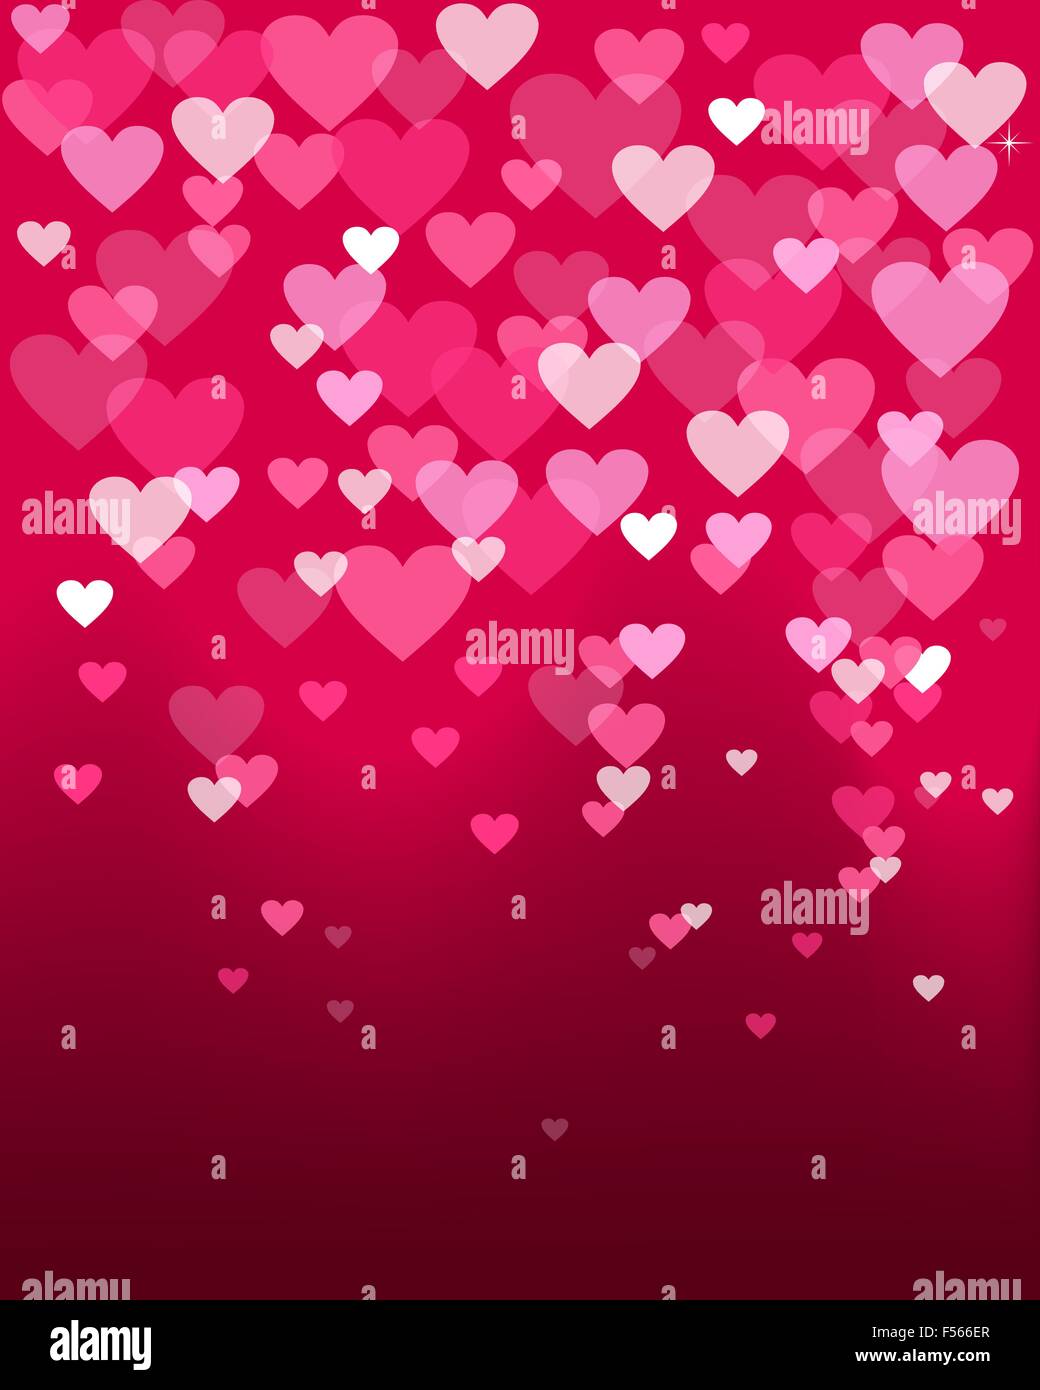 Felice il giorno di san valentino amore cuore luci di forma design in stile bokeh di fondo. Ideale per amore di san valentino card, invito a nozze, compleanno Illustrazione Vettoriale